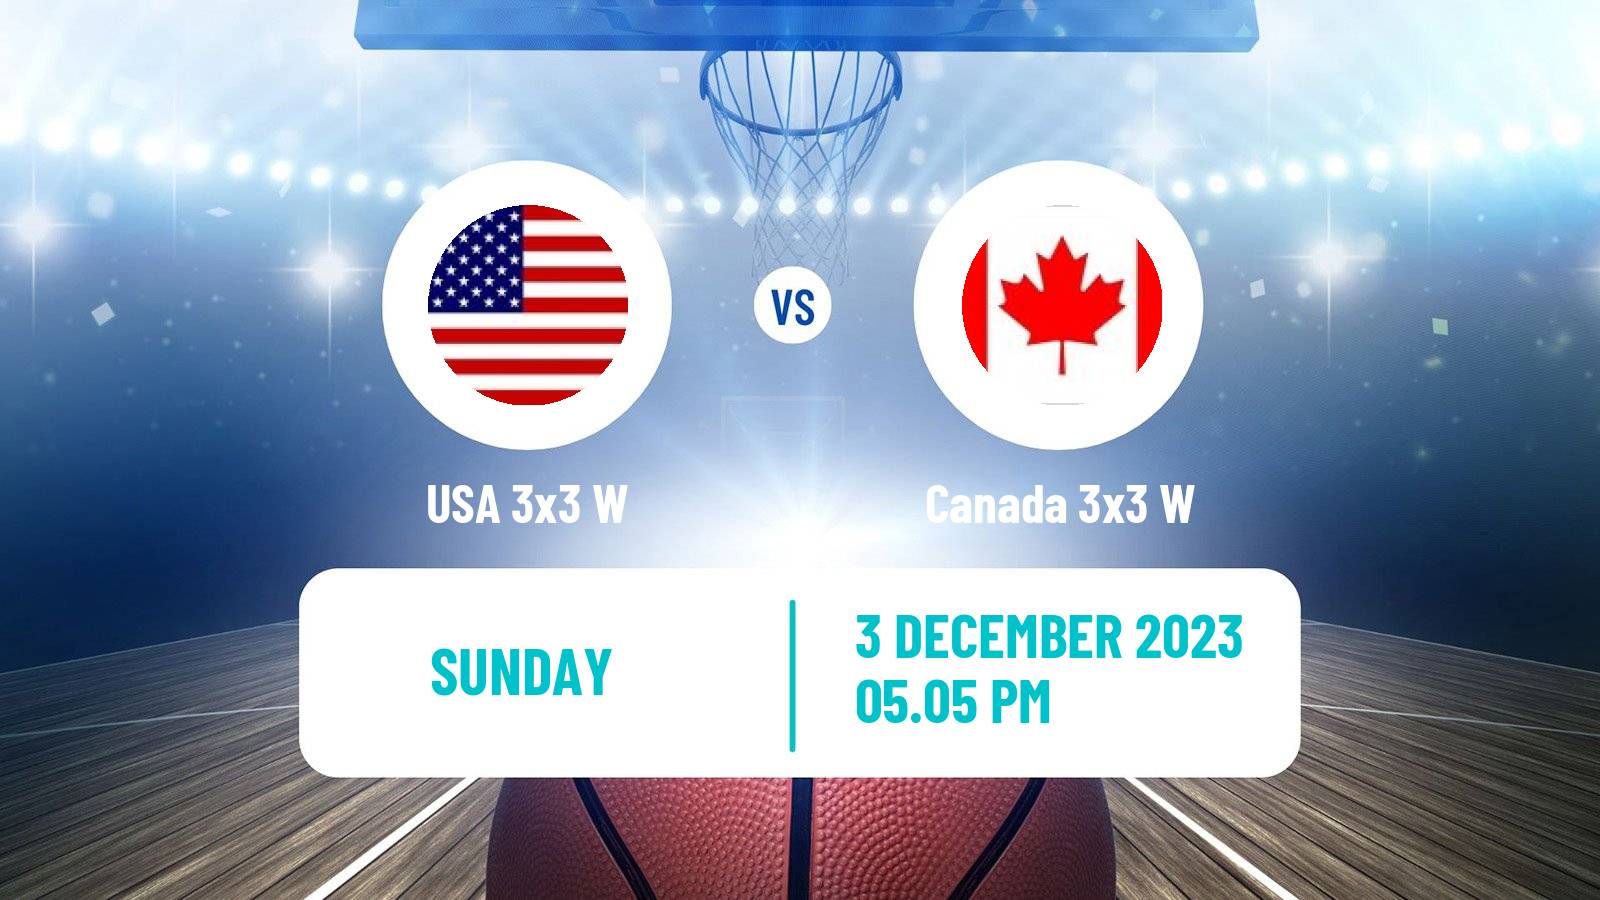 Basketball Americup 3x3 Women USA 3x3 W - Canada 3x3 W